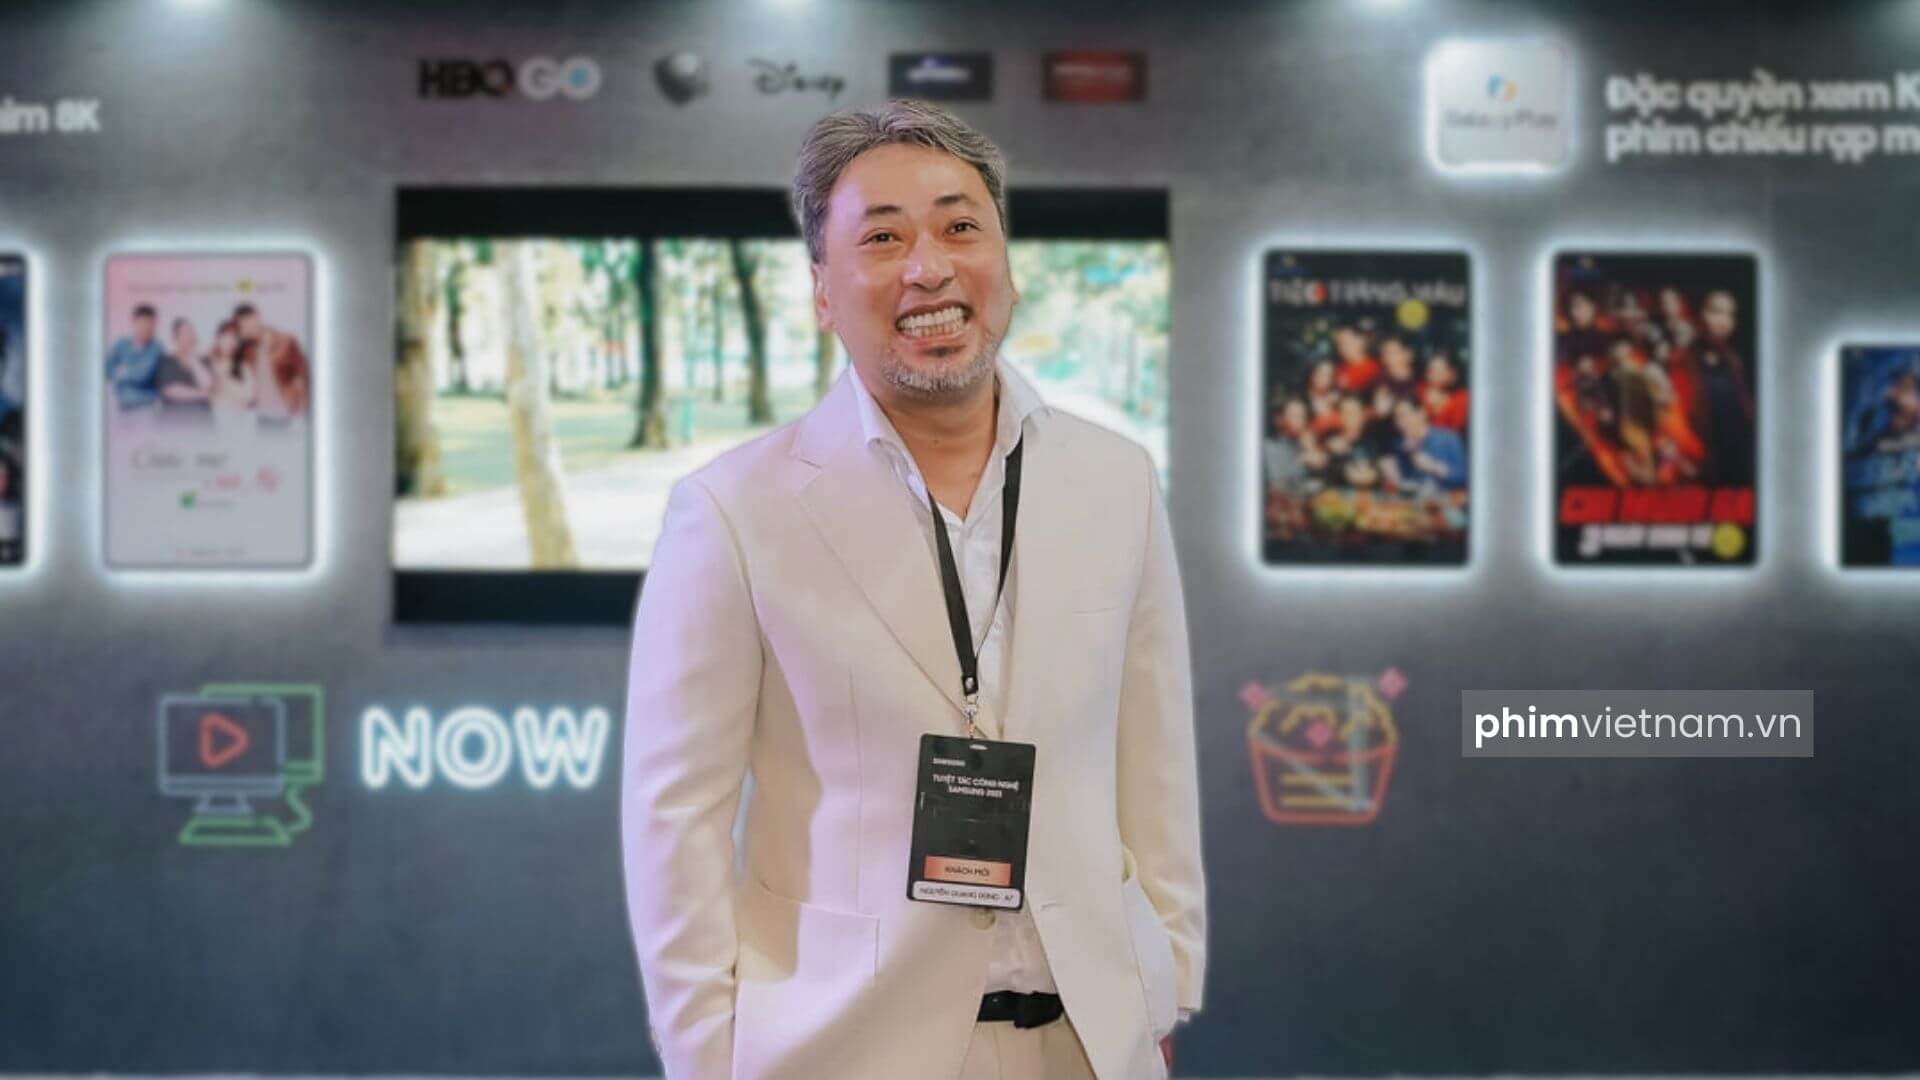 Đạo diễn Nguyễn Quang Dũng đạt nhiều giải thưởng trong sự nghiệp đạo diễn